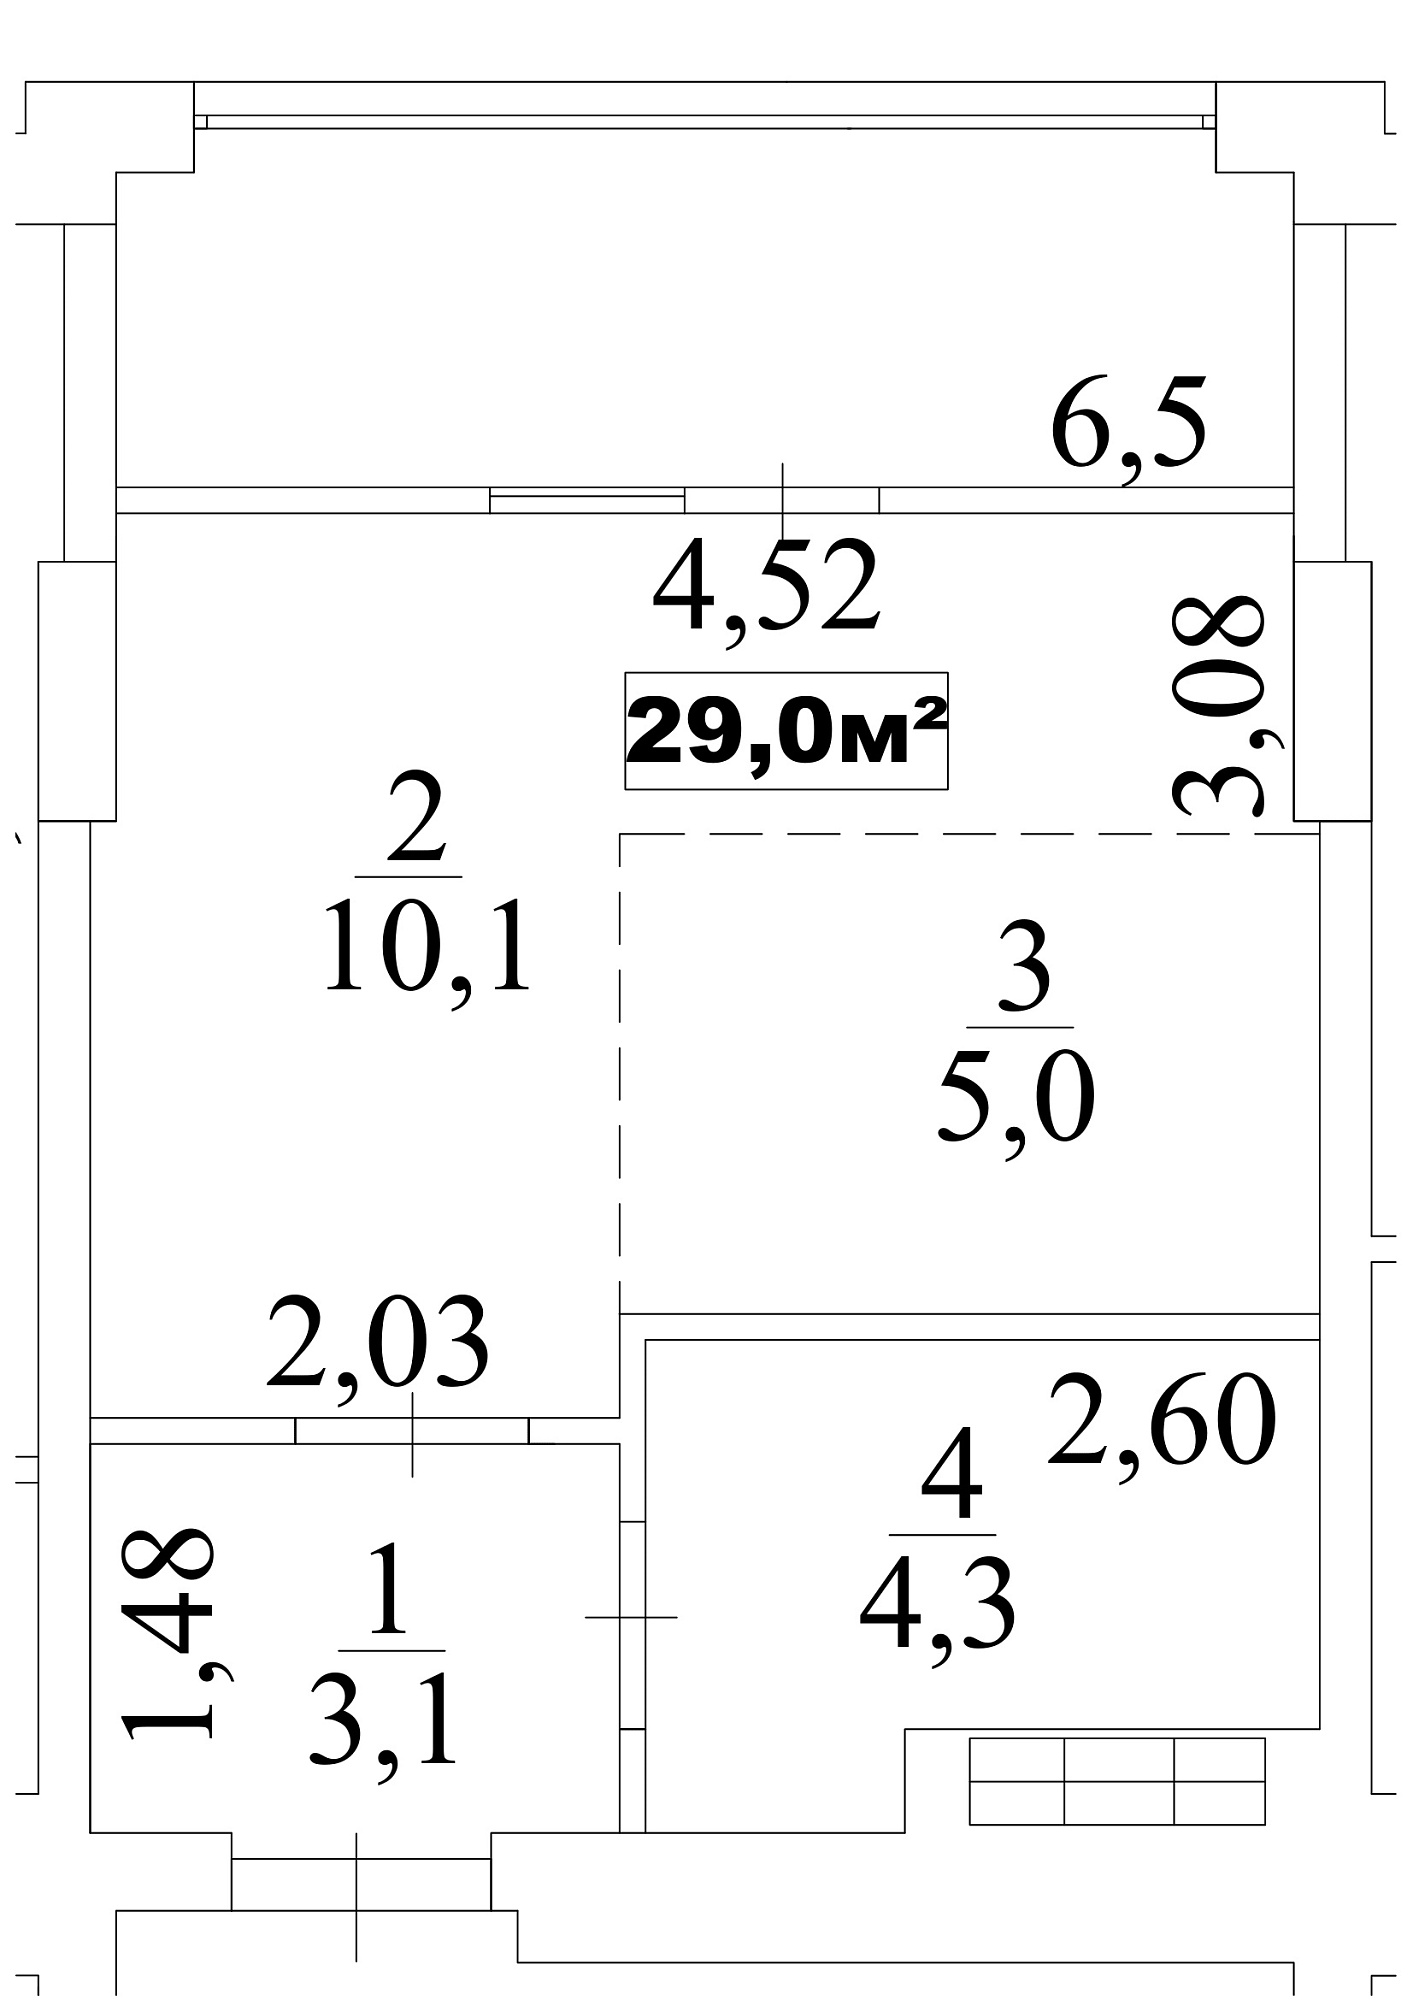 Планування Smart-квартира площею 29м2, AB-10-06/00050.